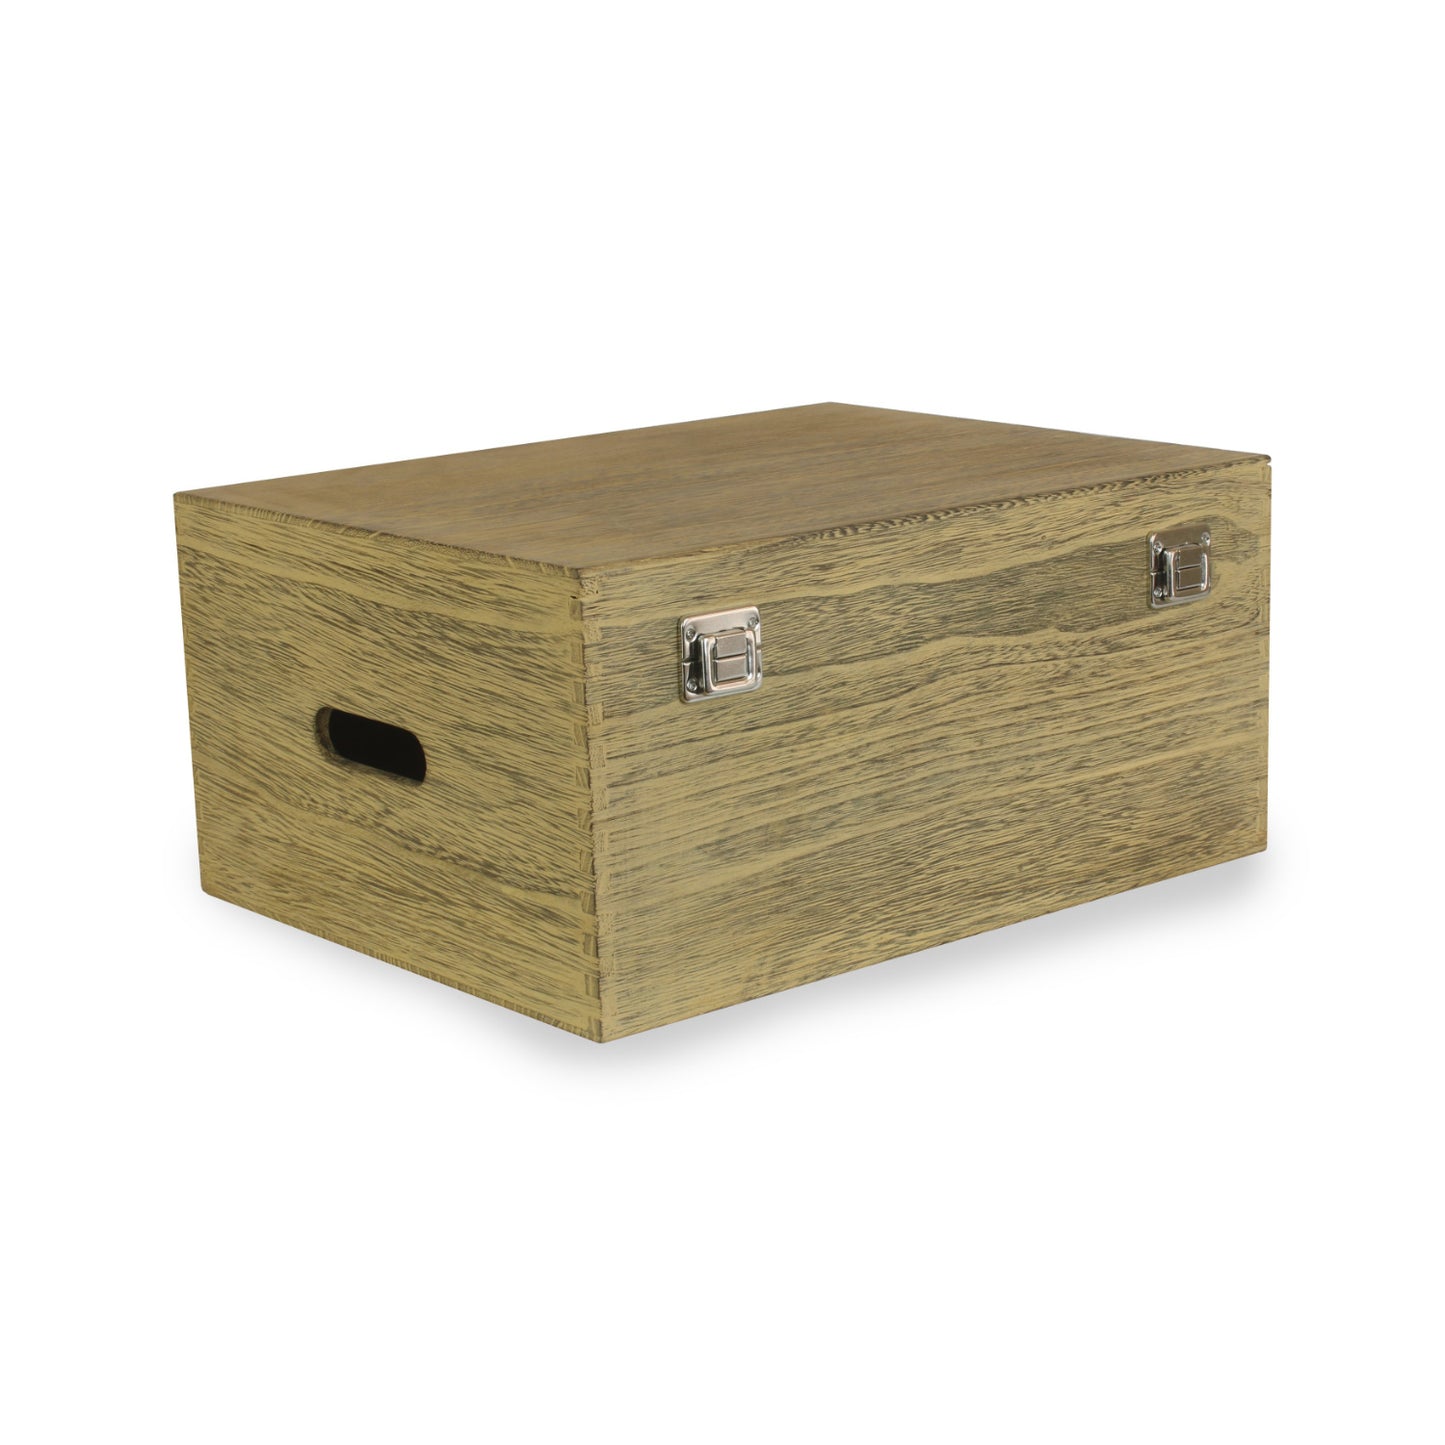 16 Inch Oak Effect Wooden Box